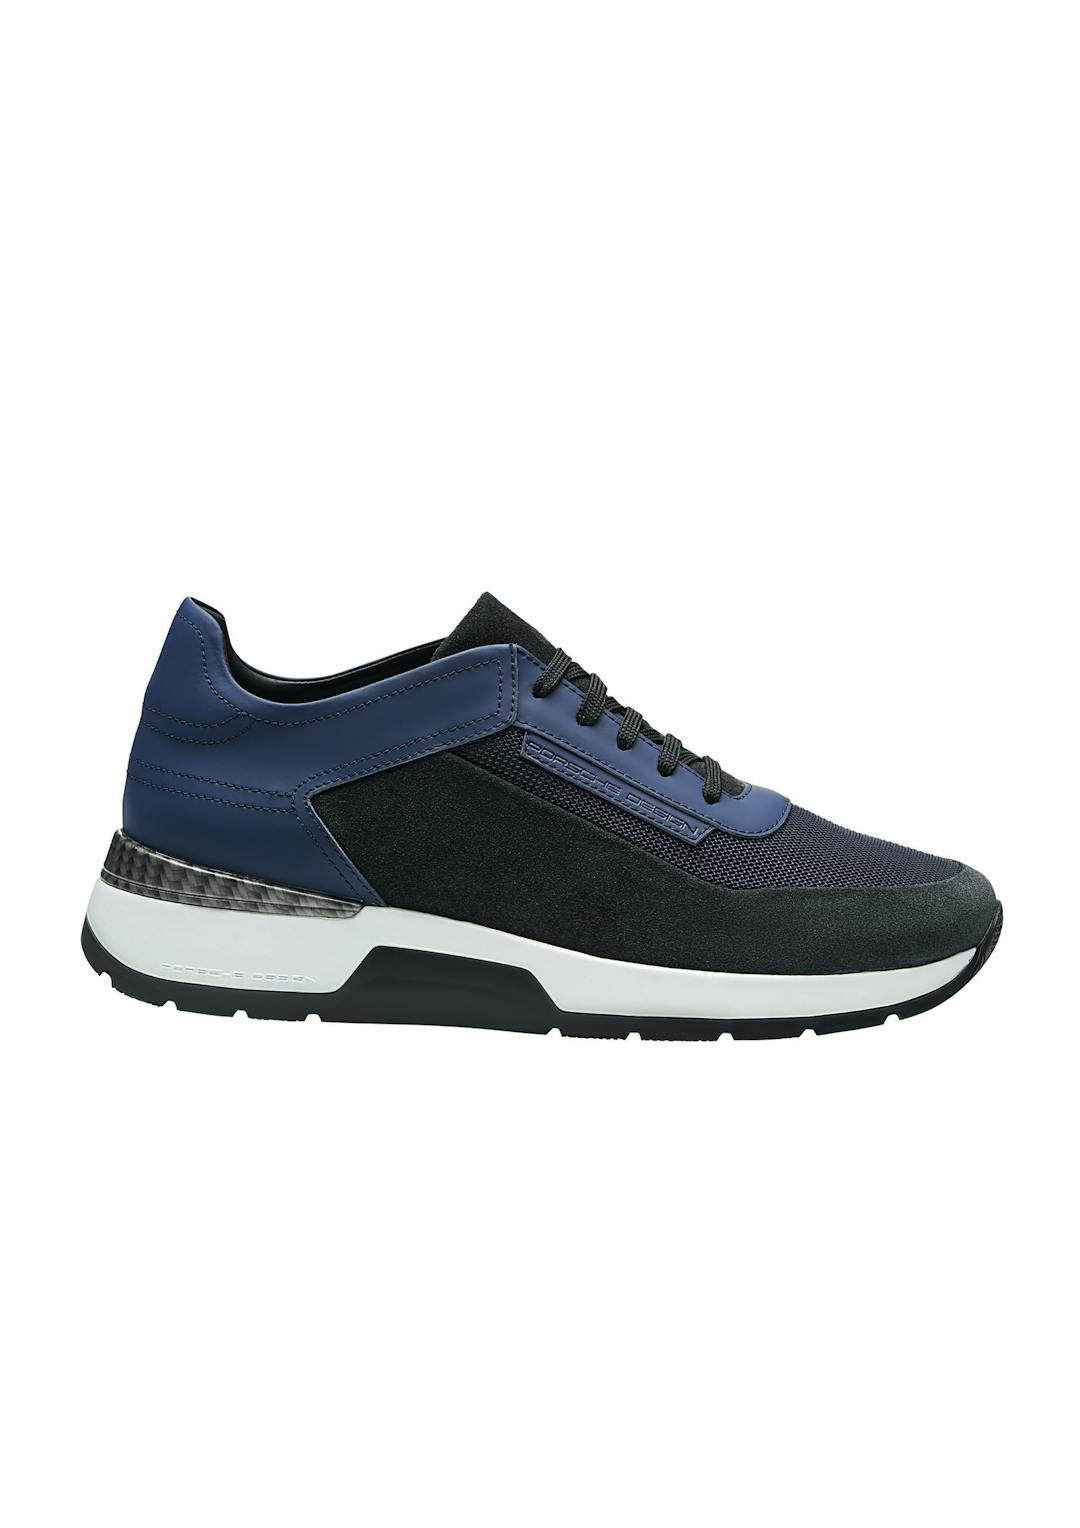 PorscheDesign_Shoes_XLUltralightMesh_Sneaker_NavyBlazer